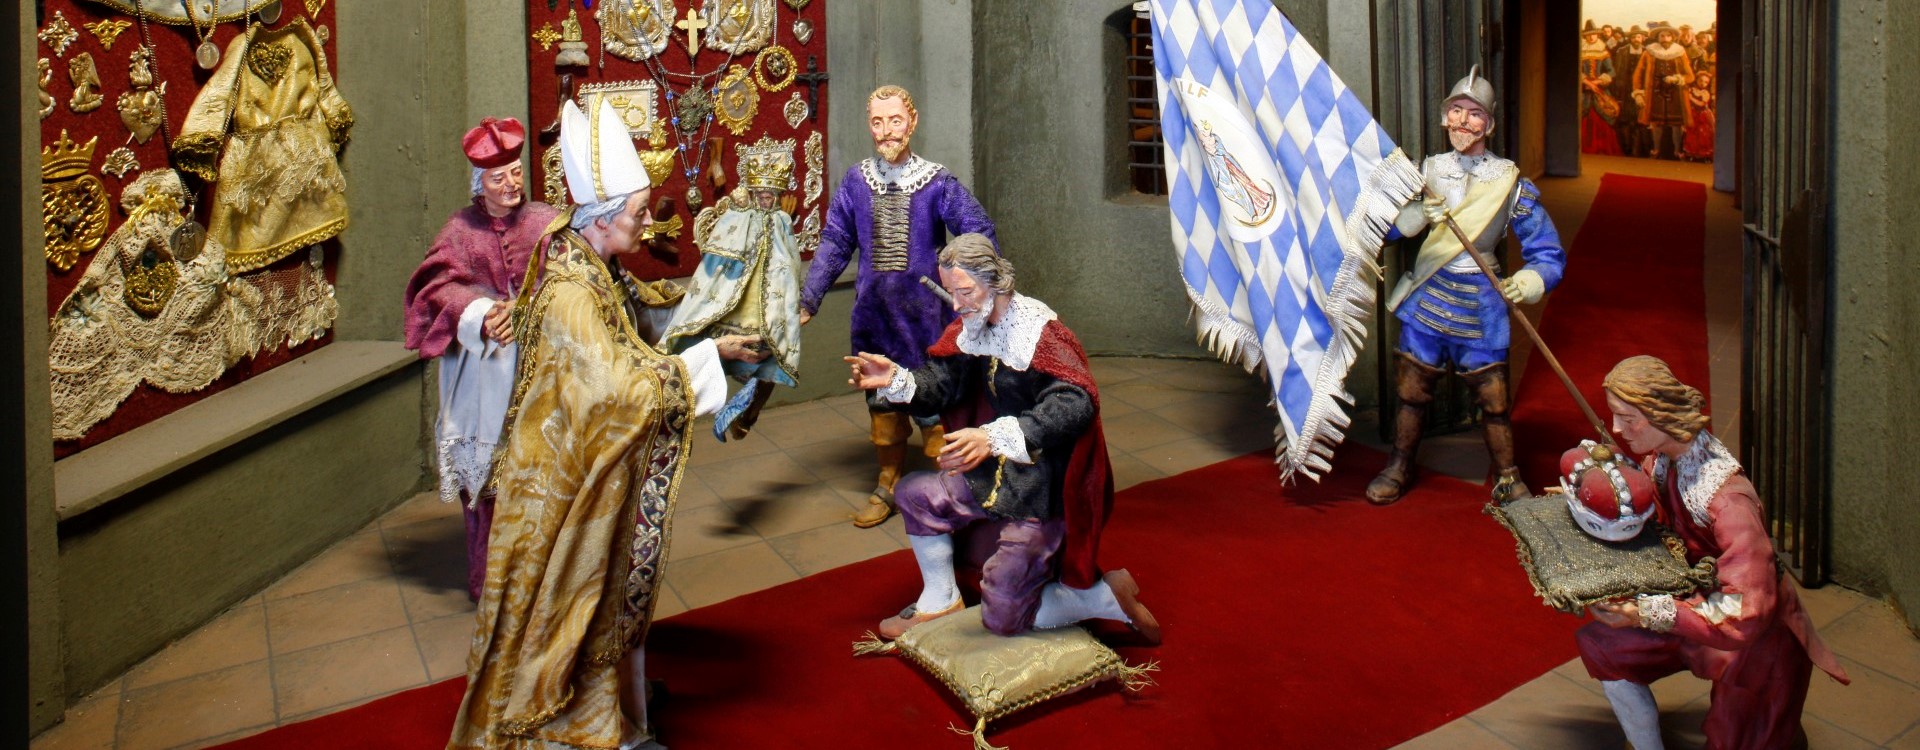 Dioramenschau Altötting, Diorama von Graf Tilly und Maximilian I. in der Gnadenkapelle knieend vor dem Gnadenbild.